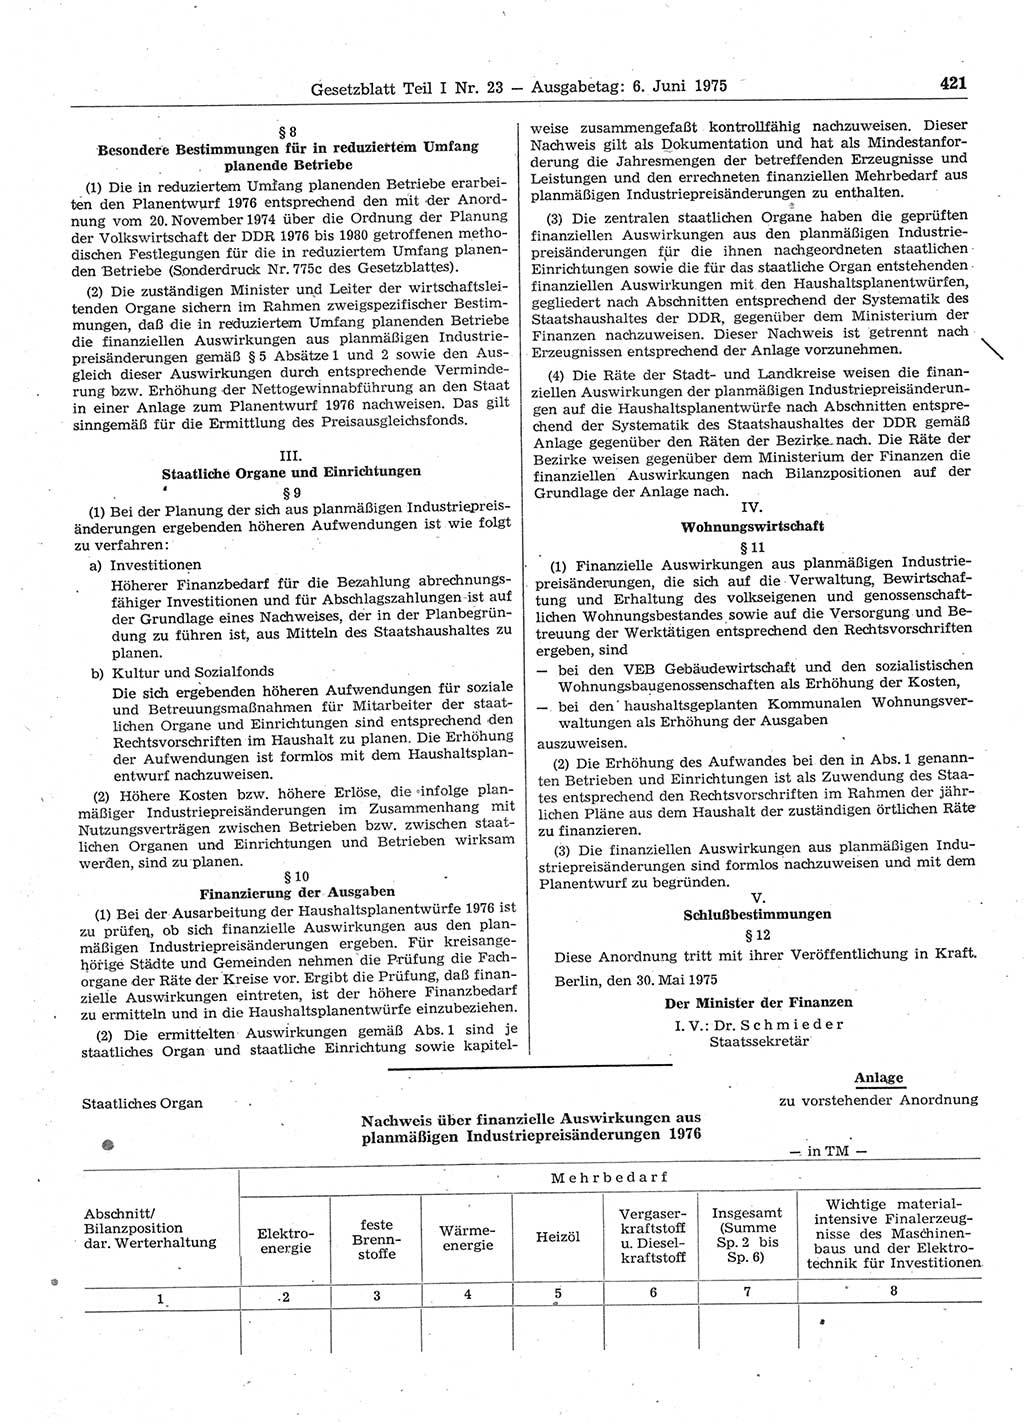 Gesetzblatt (GBl.) der Deutschen Demokratischen Republik (DDR) Teil Ⅰ 1975, Seite 421 (GBl. DDR Ⅰ 1975, S. 421)